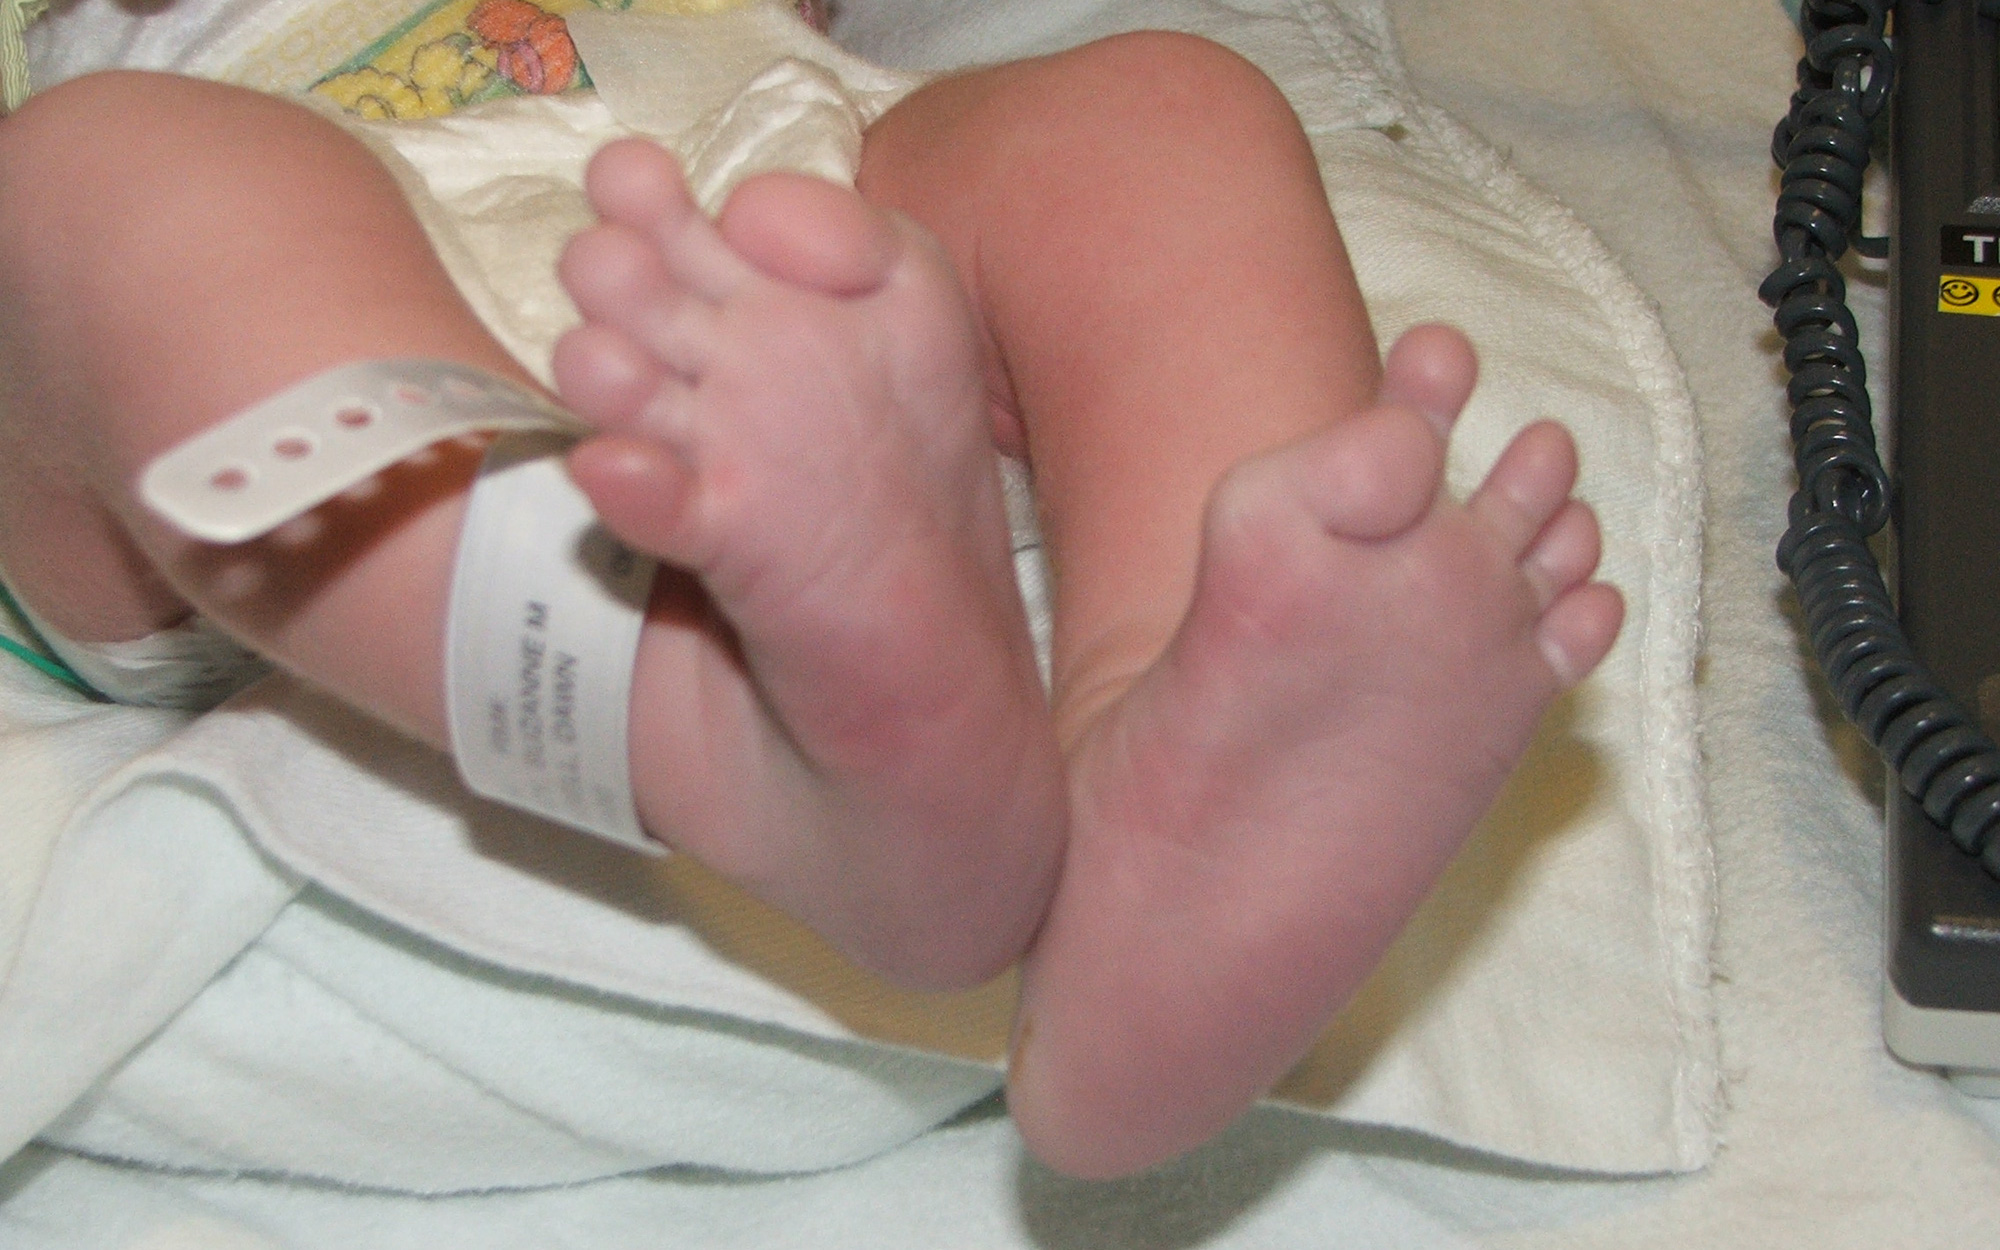 Thấy con gái mới sinh có ngón chân cái kỳ lạ, bố mẹ đi xét nghiệm rồi kinh hoàng nghe bác sĩ chẩn đoán con sẽ bị "hóa đá"